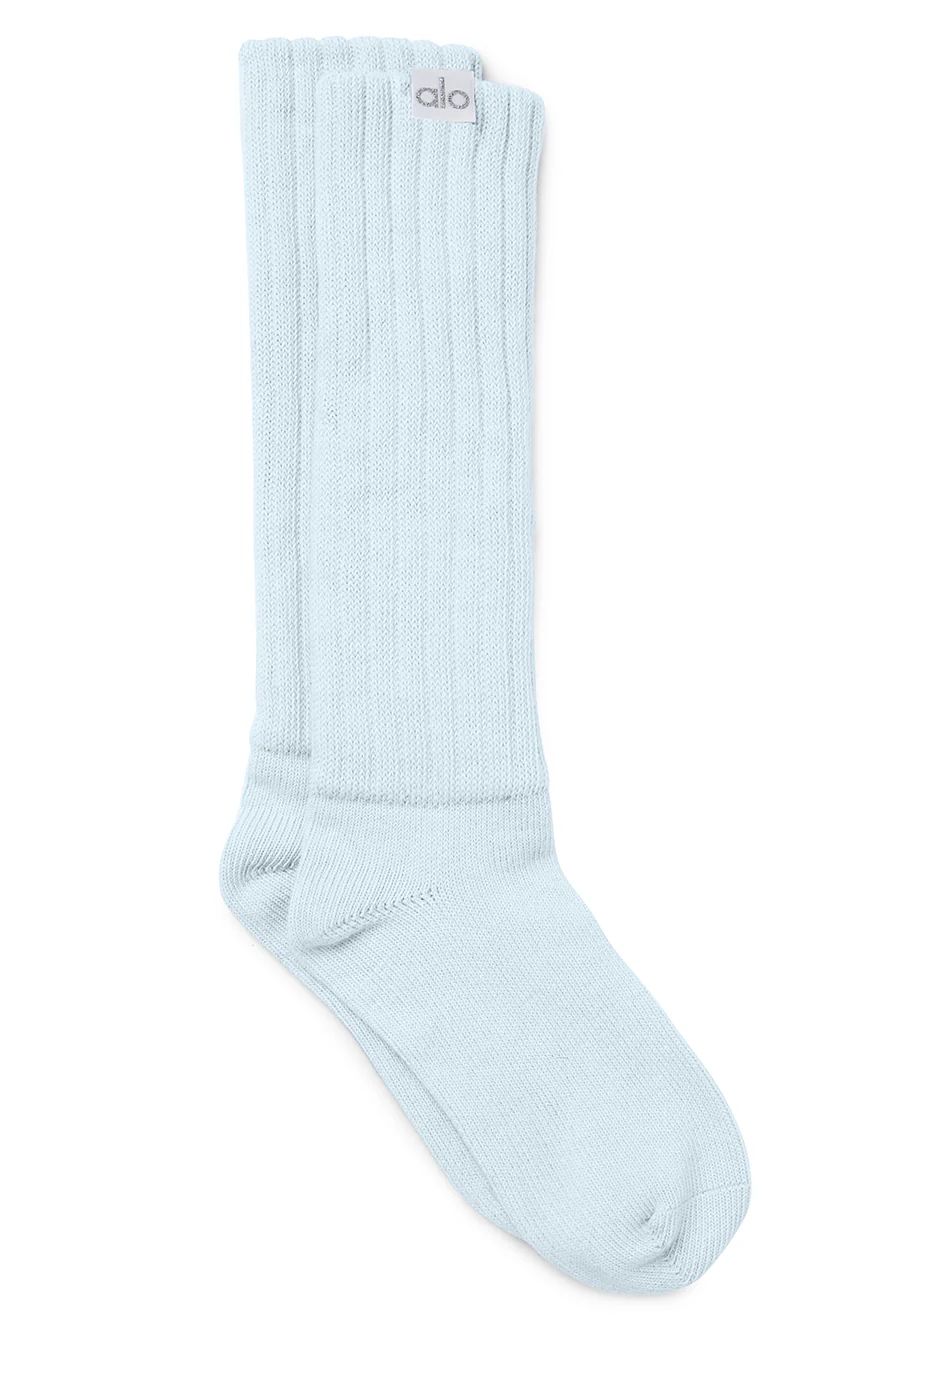 Women's Scrunch Socks in Powder Blue, Size: S/M (5-7.5) | Alo YogaÅ½ | Alo Yoga